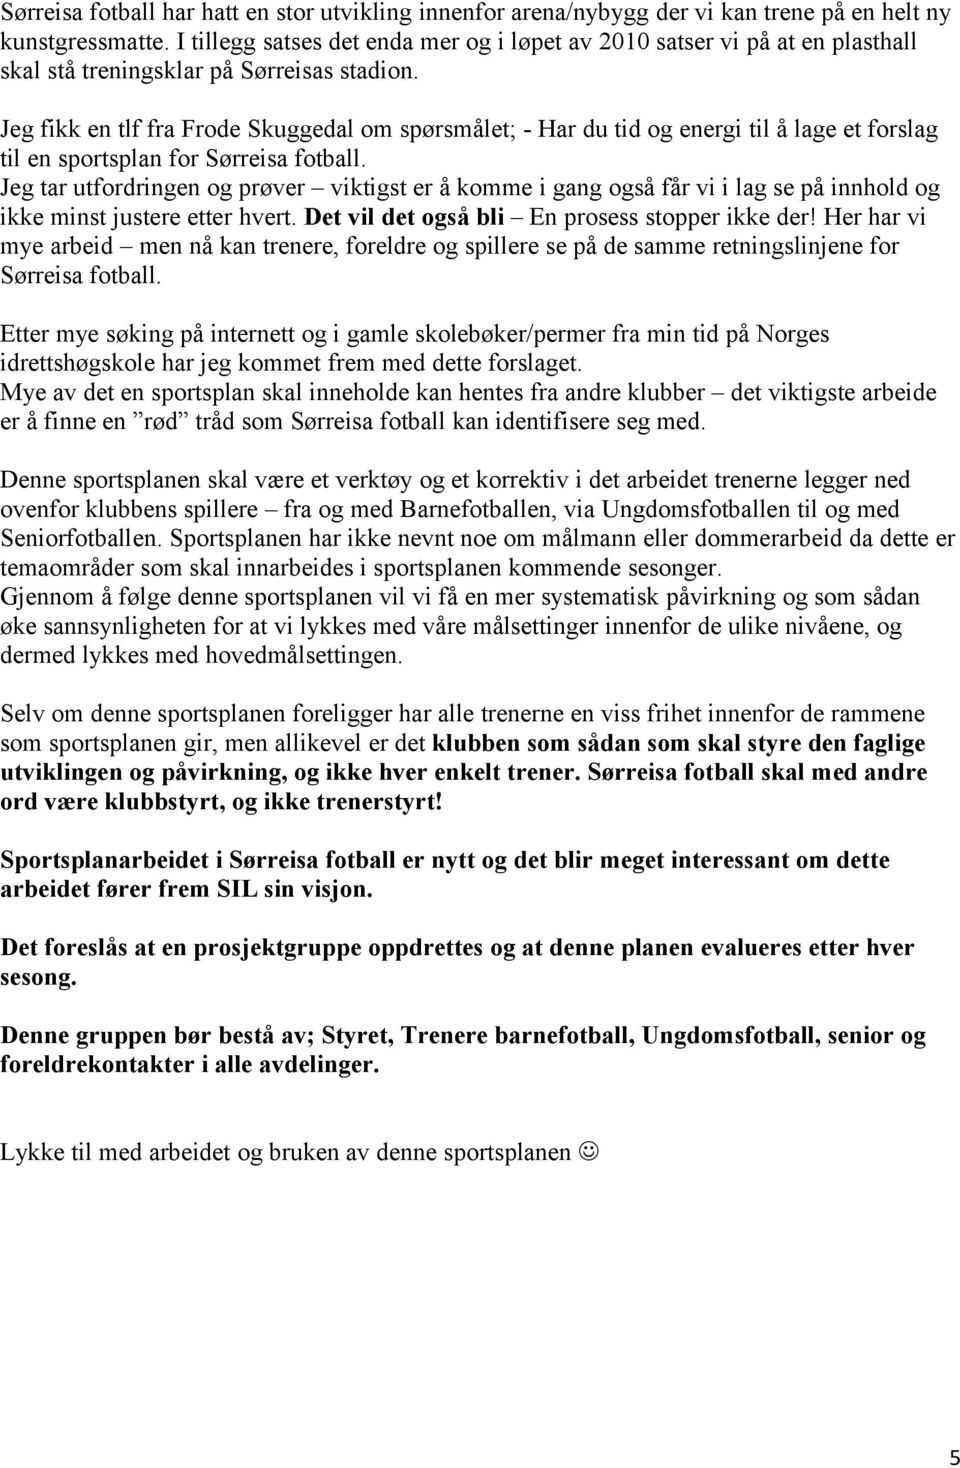 Jeg fikk en tlf fra Frode Skuggedal om spørsmålet; Har du tid og energi til å lage et forslag til en sportsplan for Sørreisa fotball.